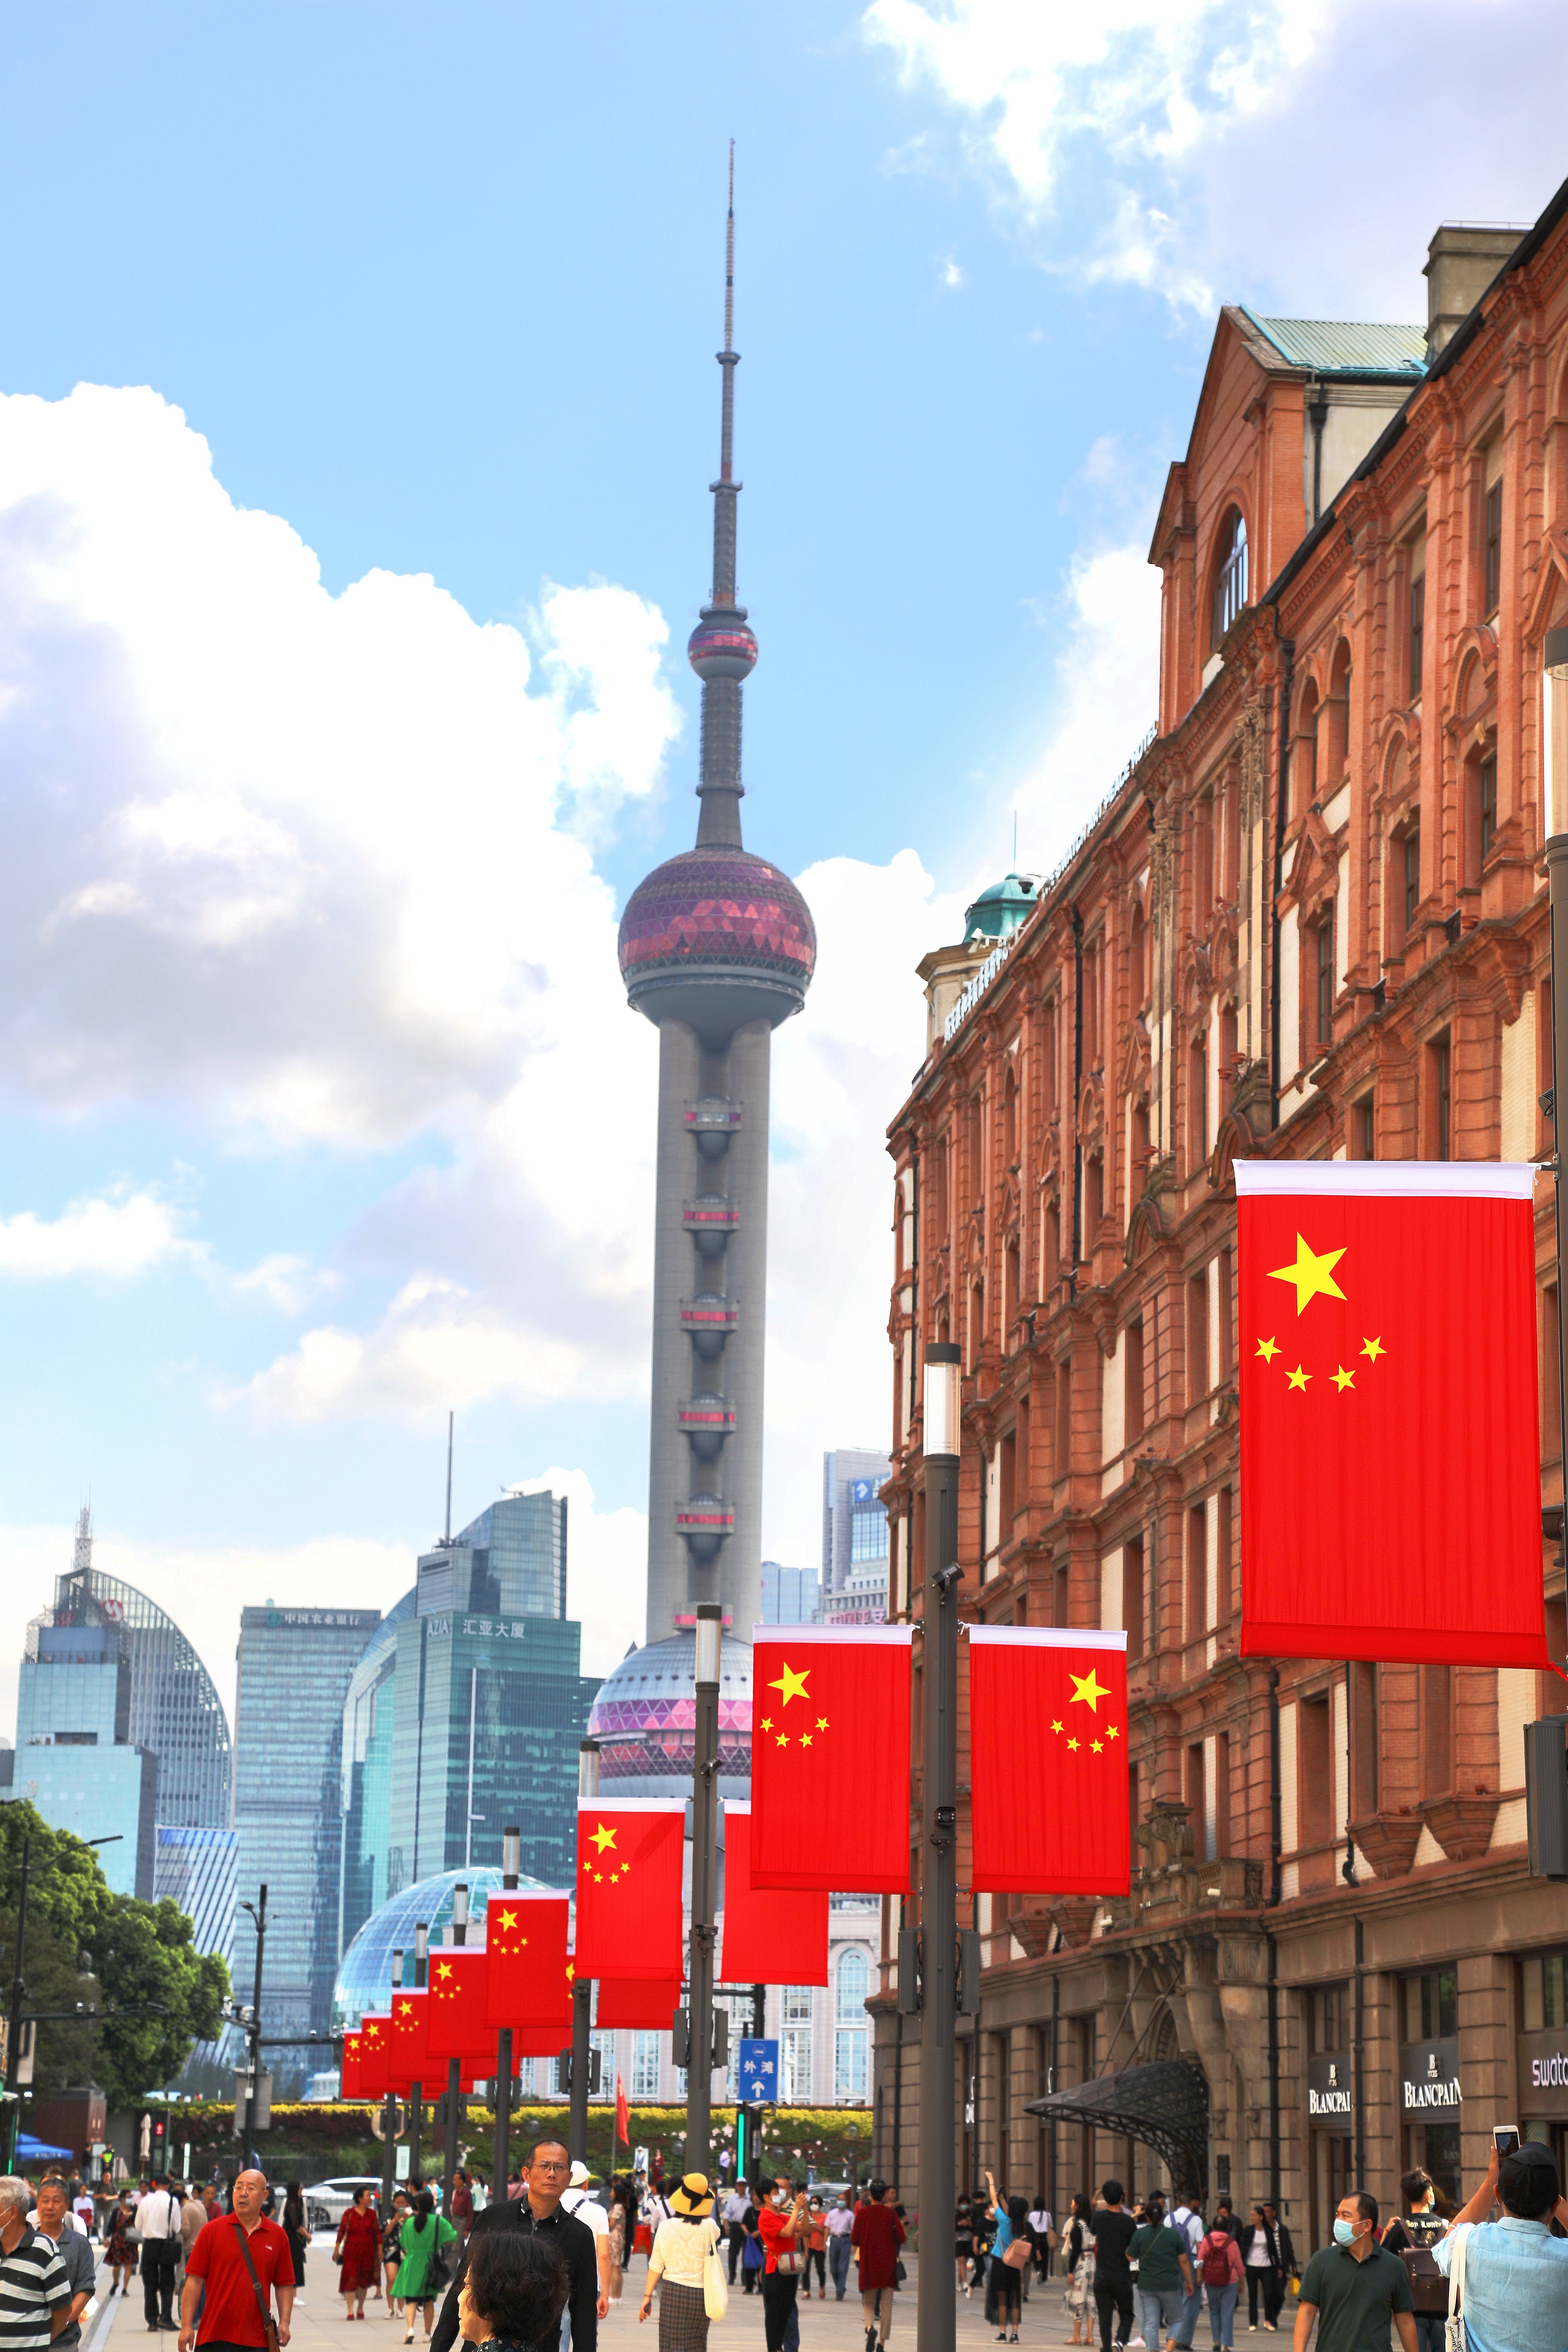 2020年10月1日,国庆节,上海,闹市区街道挂满国旗,节日氛围浓厚.